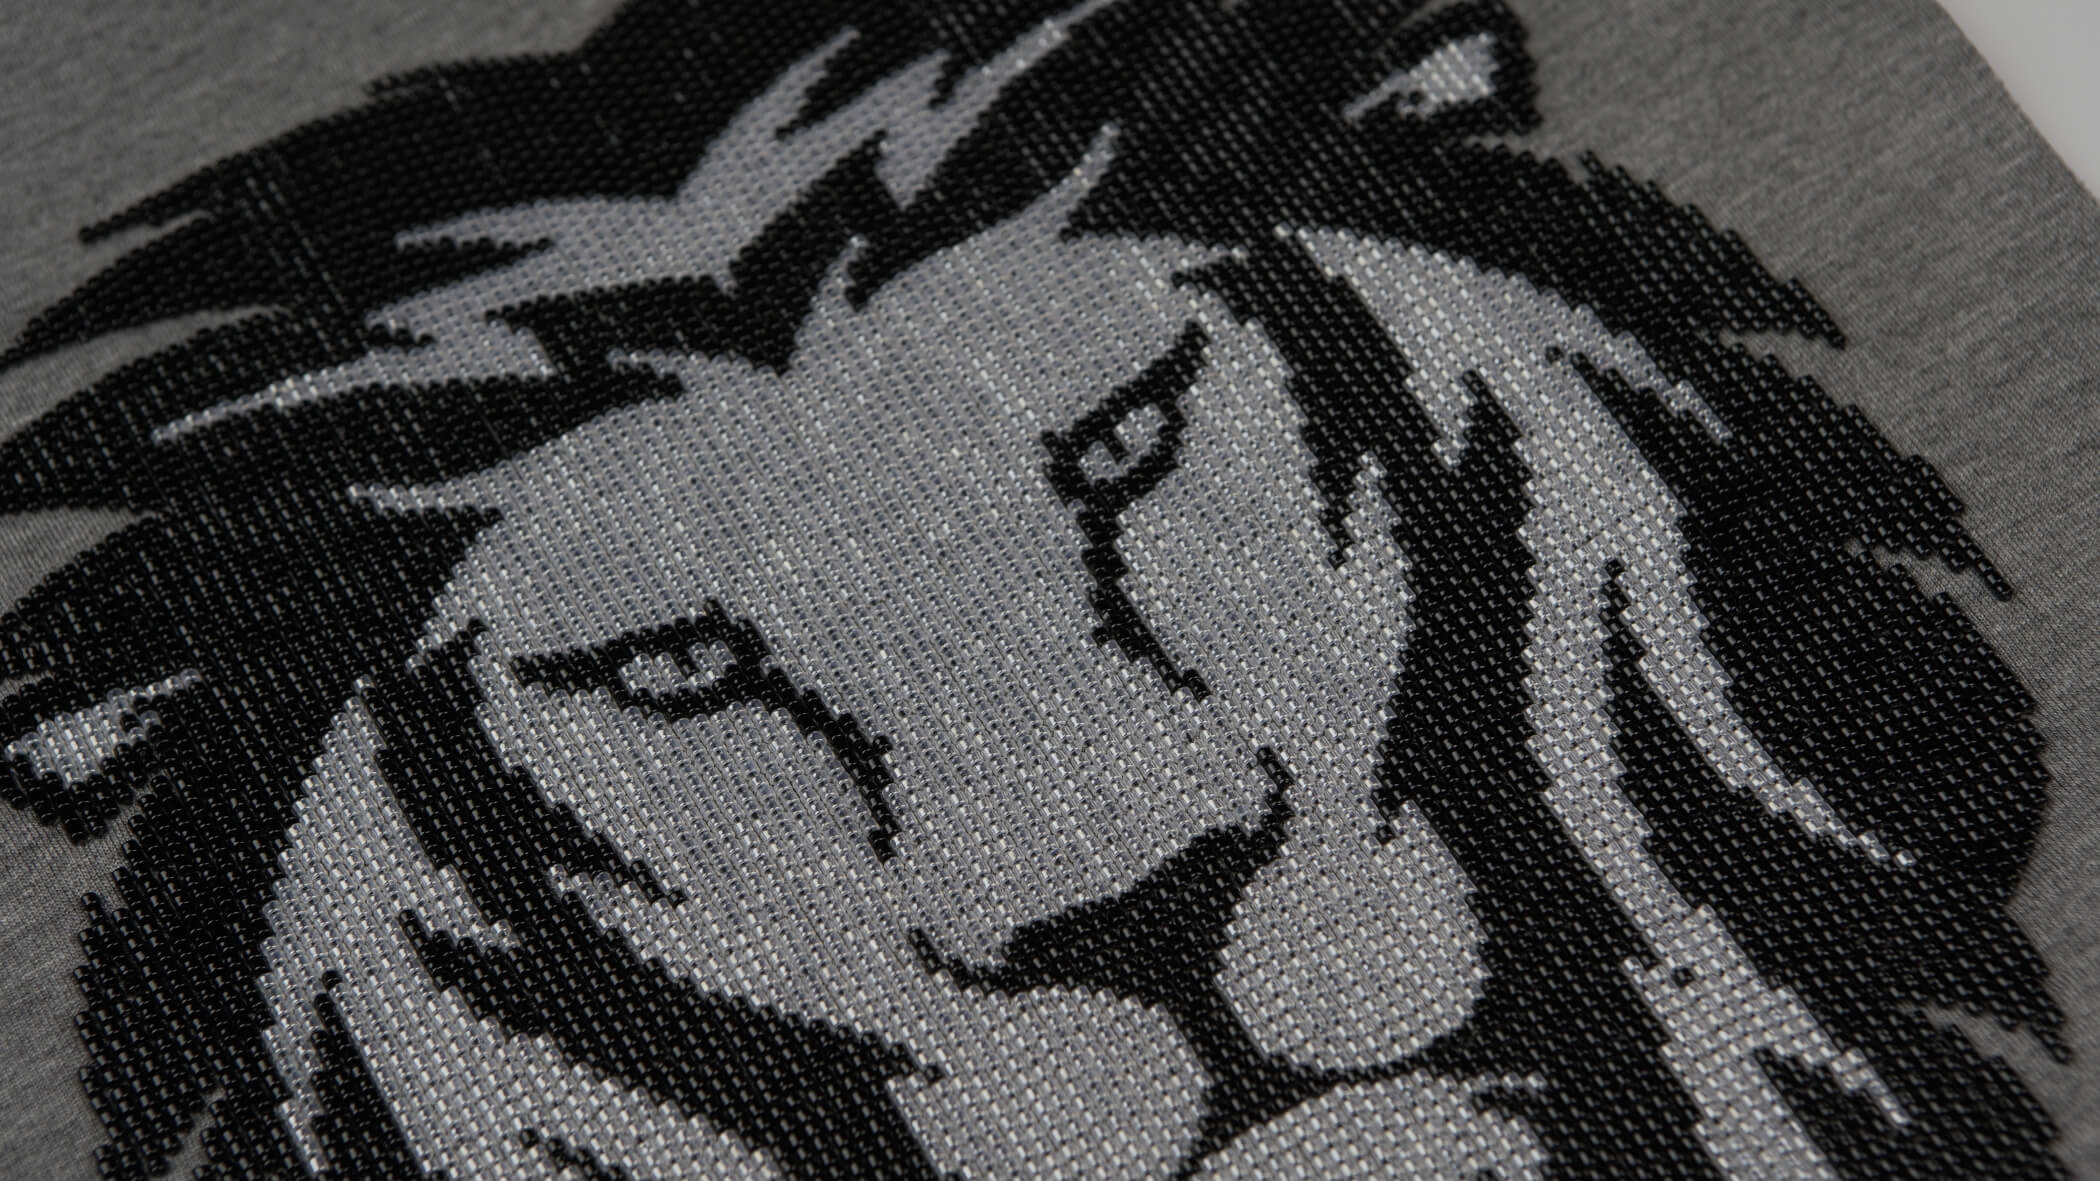 Bordado de leão em missangas pretas e brancas desenvolvido pela Bordados Oliveira